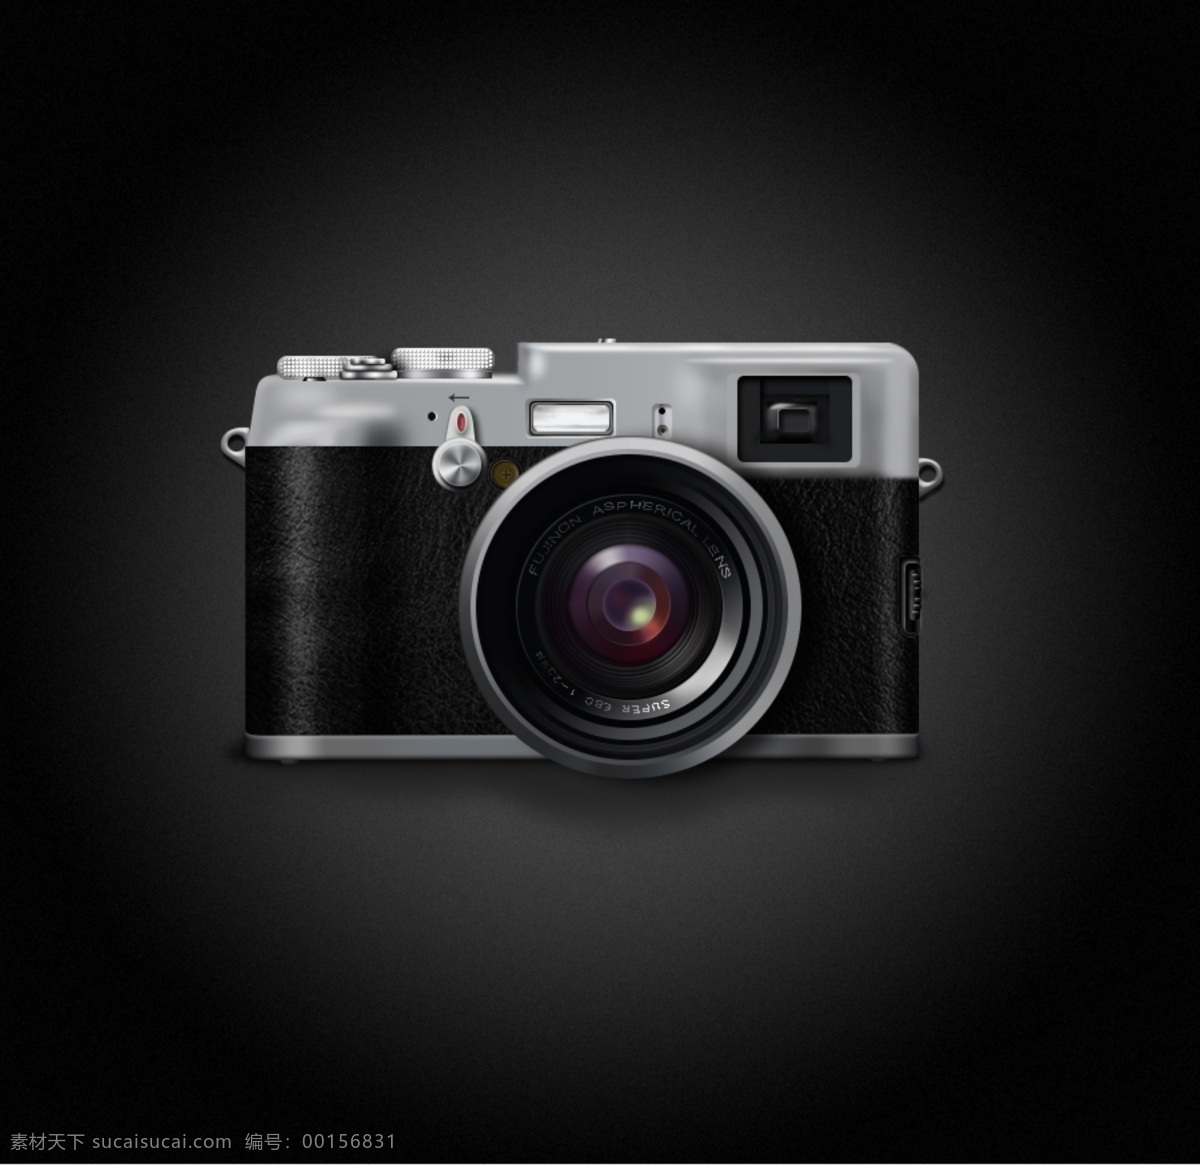 矢量图 相机 高清 现代科技 数码产品 相机矢量图 照相机 原件 相机原件 相机psd